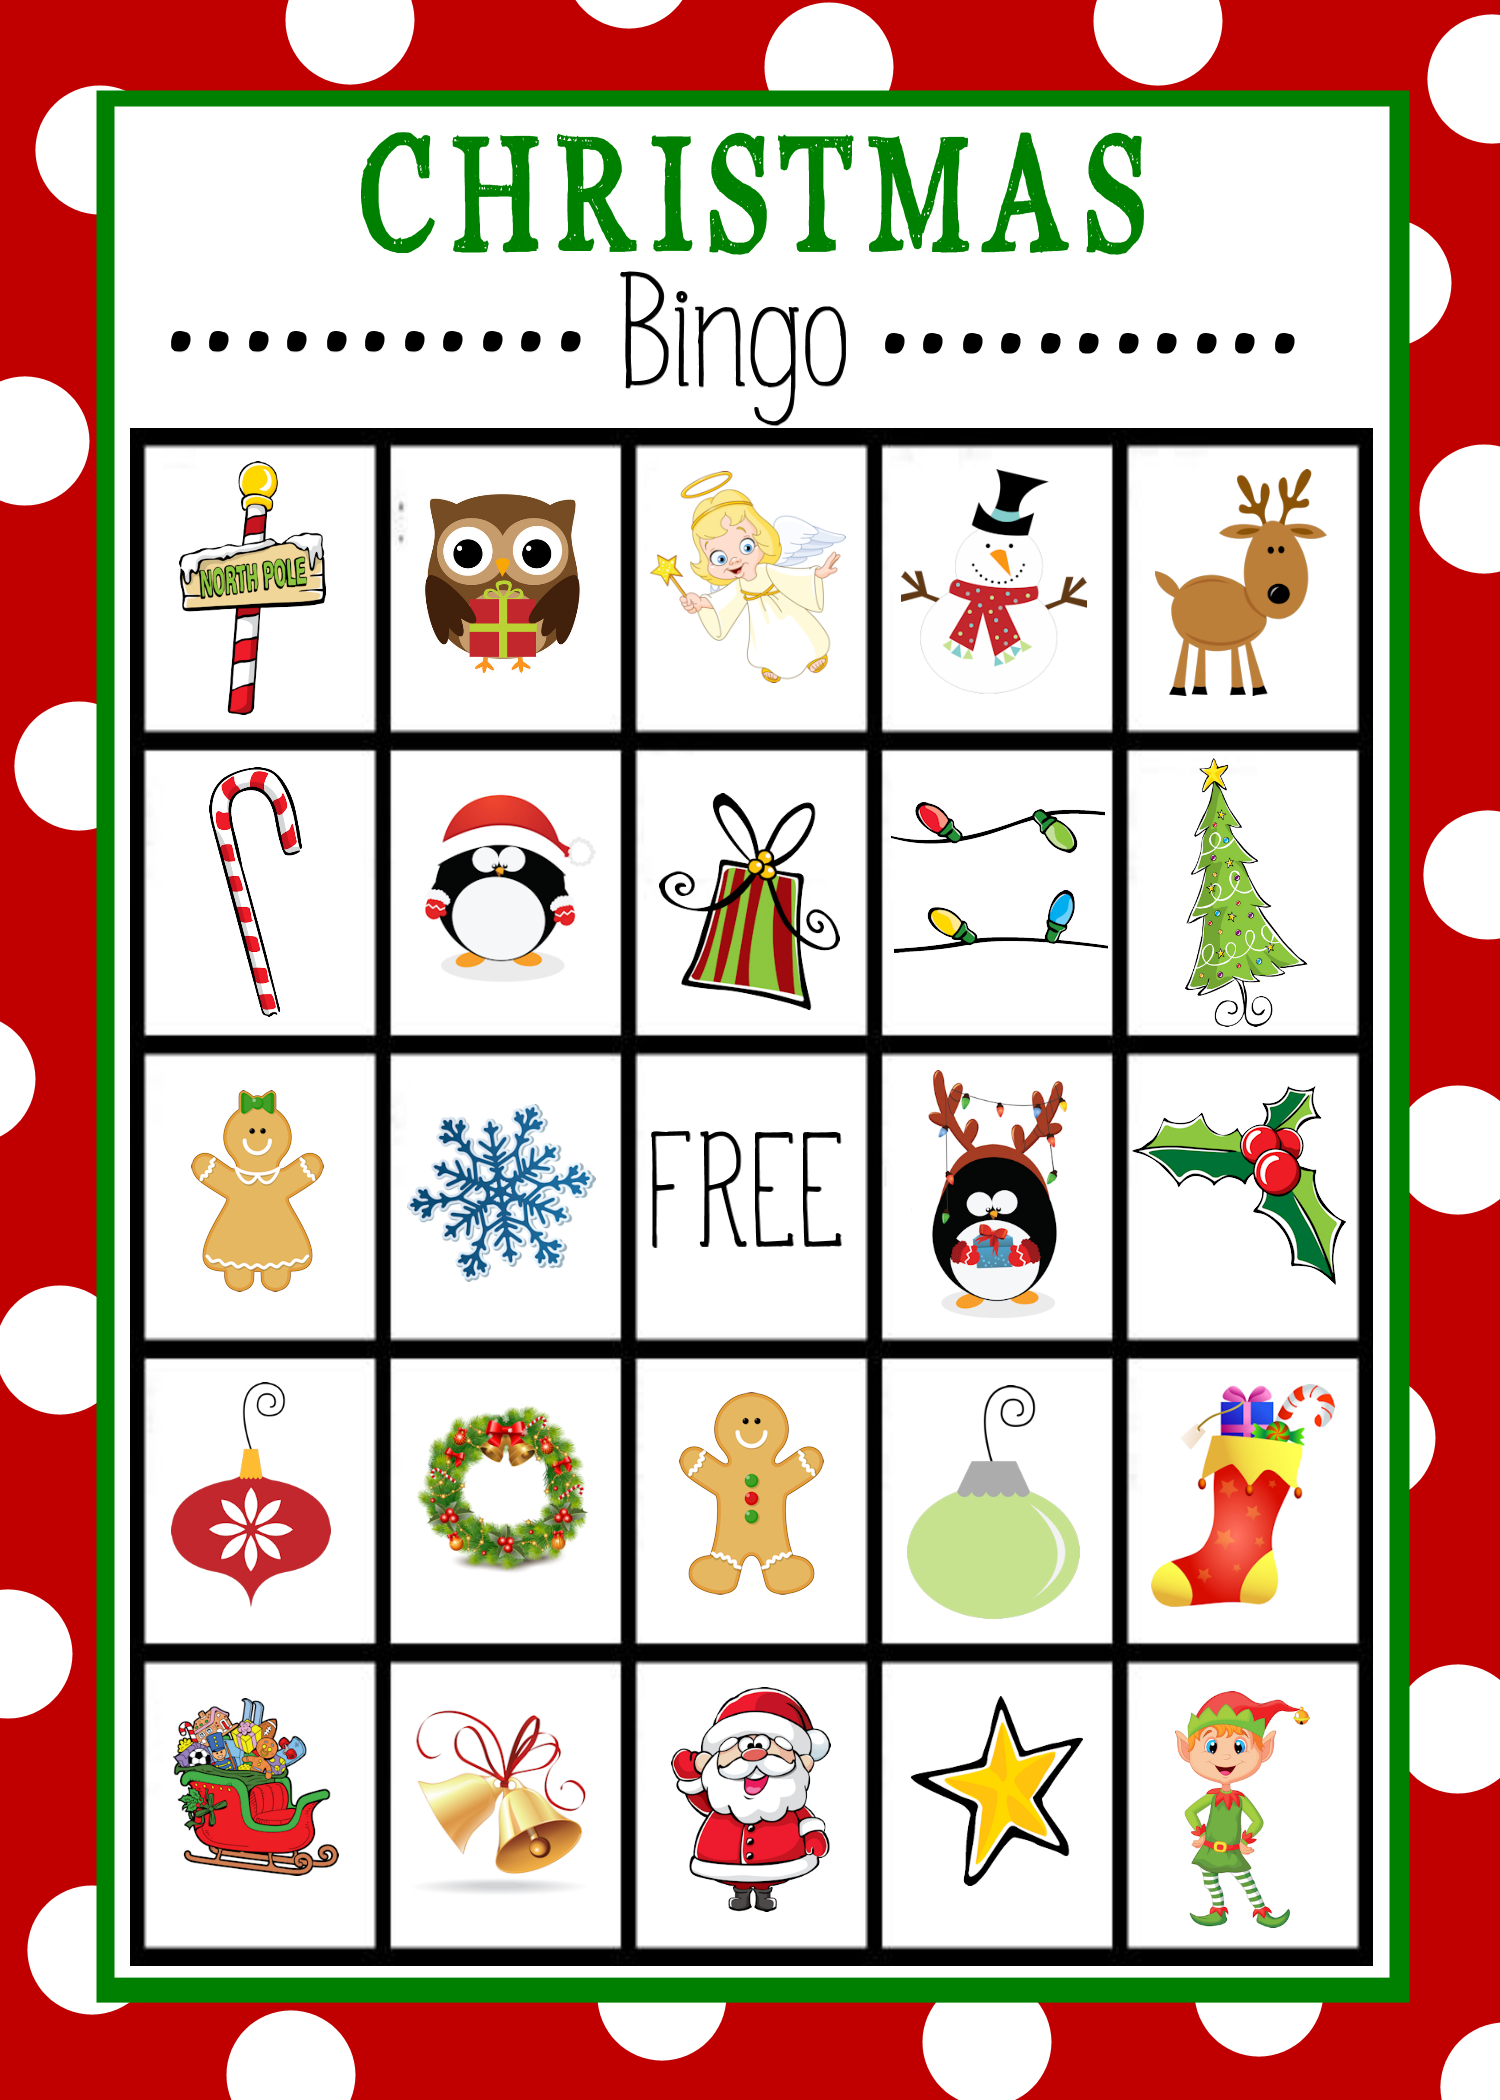 Free Printable Christmas Bingo Game | Christmas | Pinterest - Christmas Bingo Game Printable Free